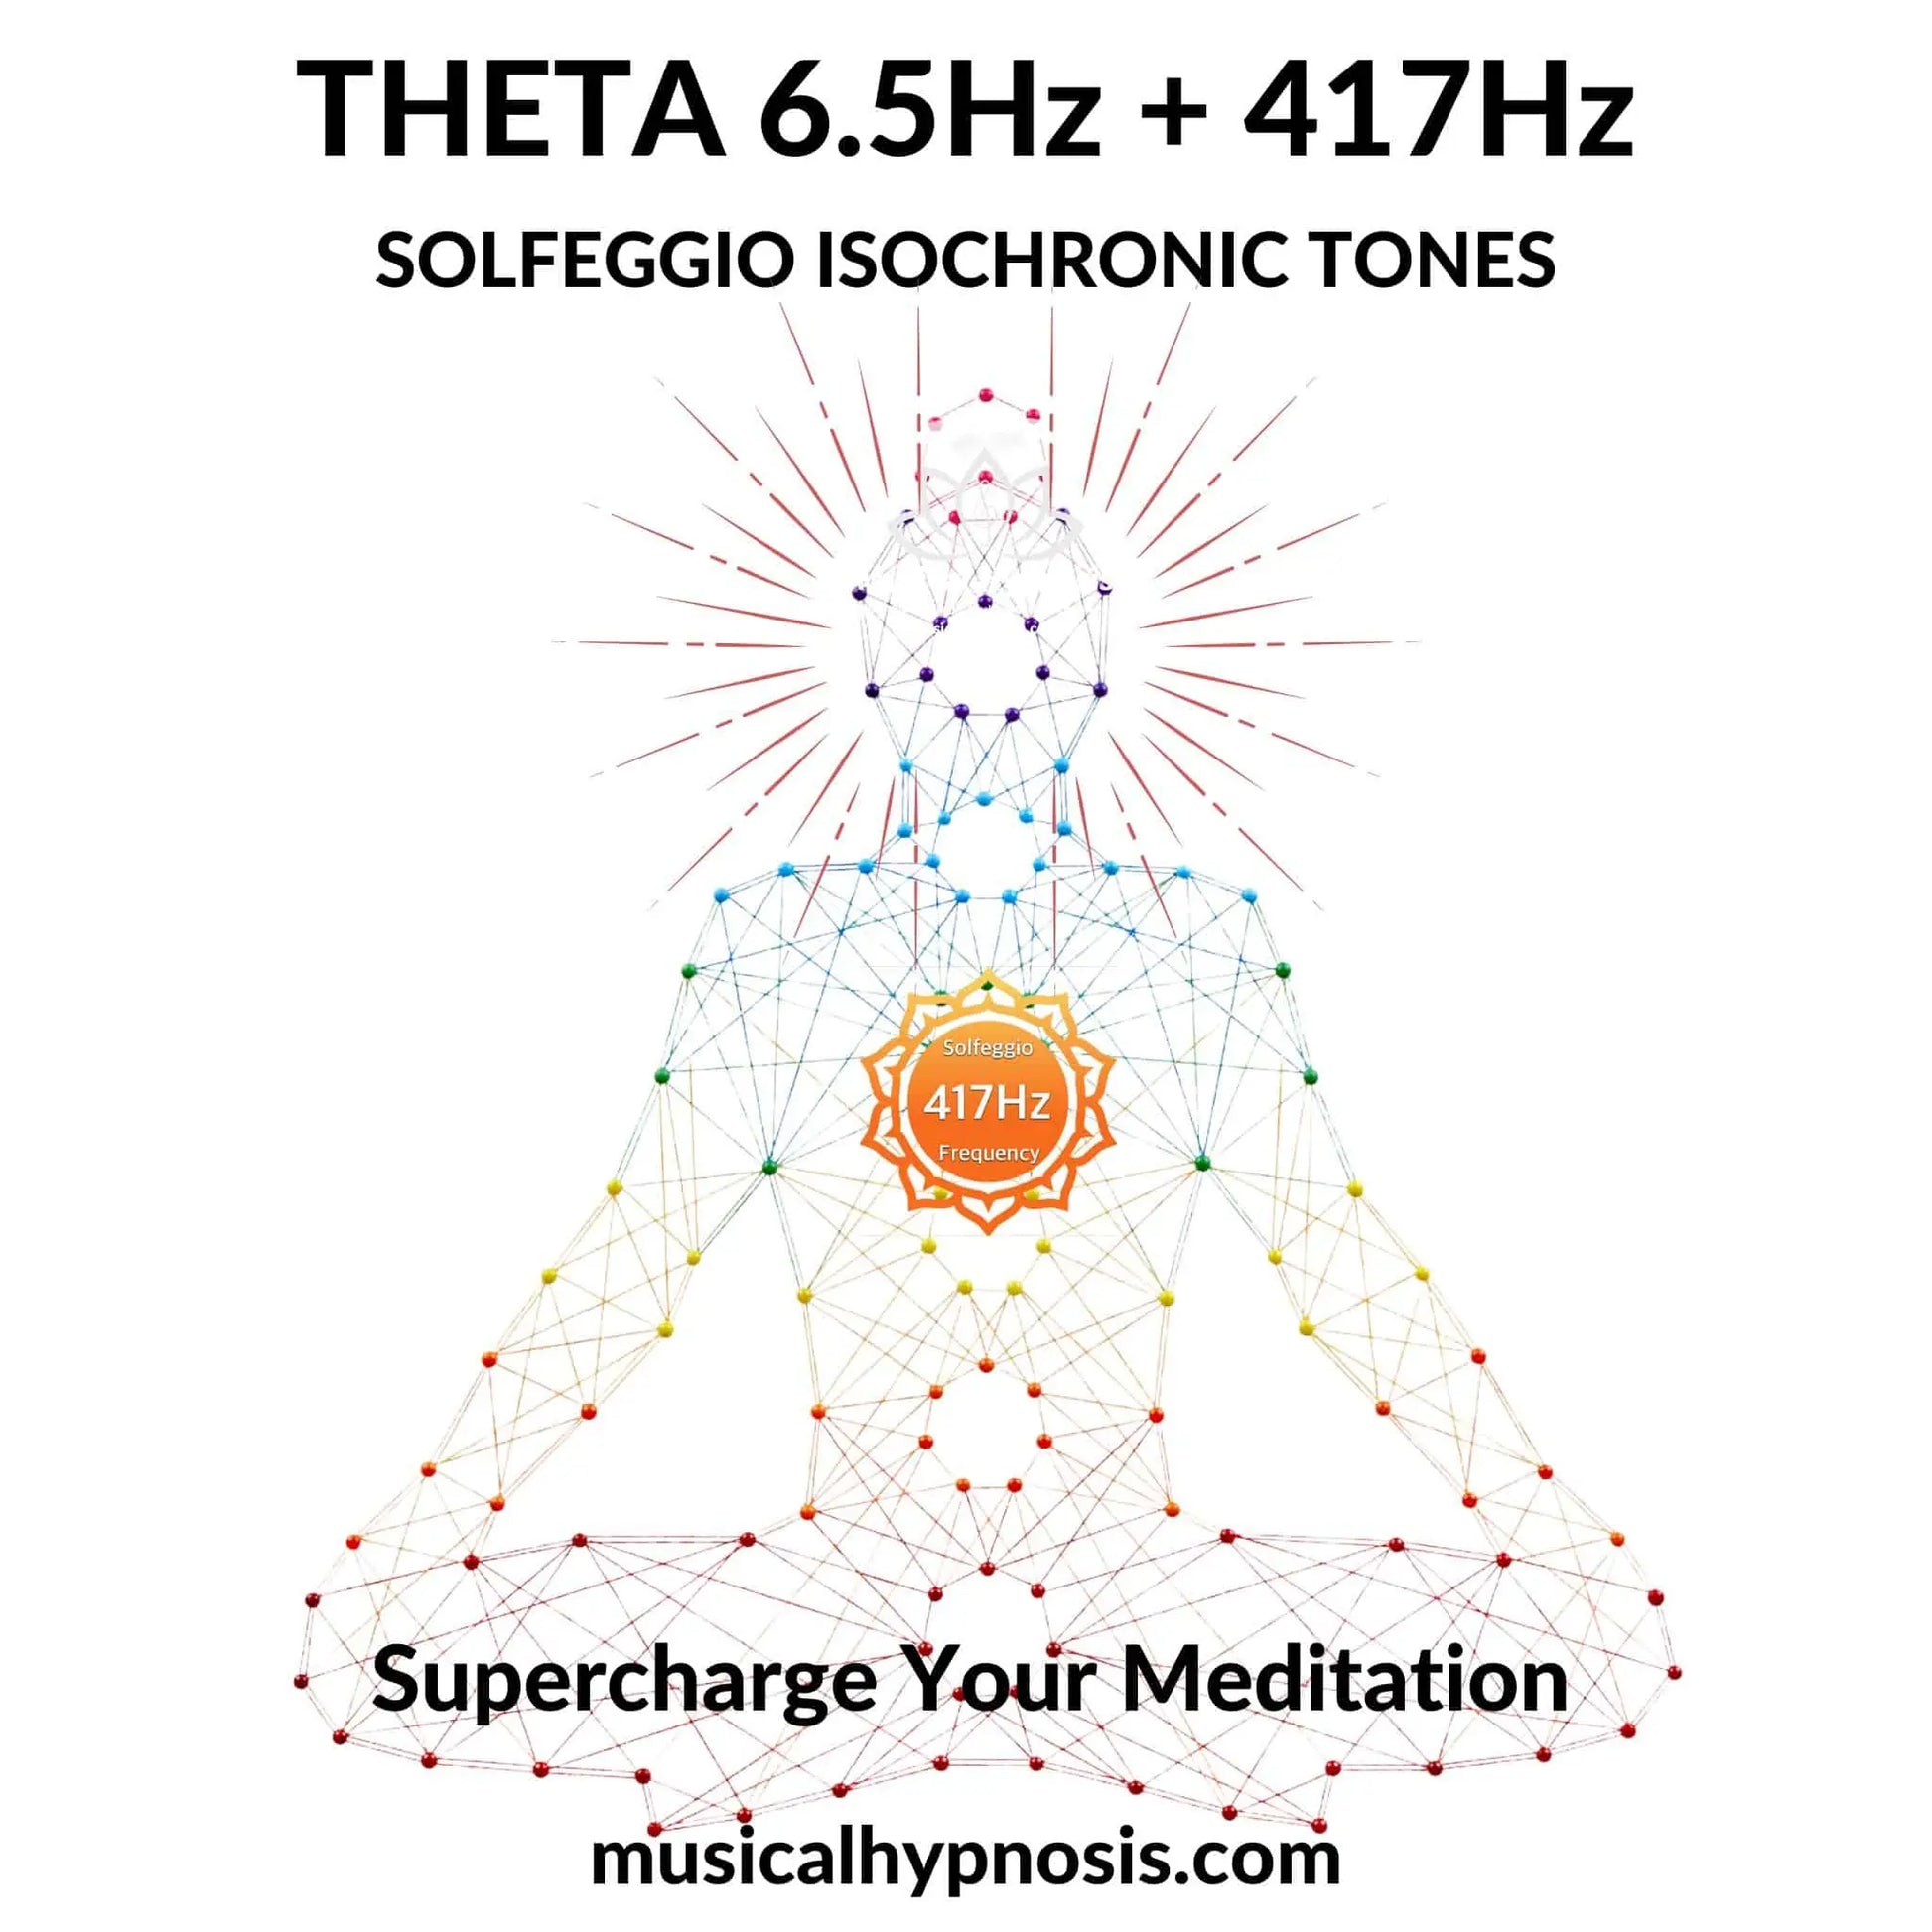 Theta 6.5Hz and 417Hz Solfeggio Isochronic Tones | 30 minutes